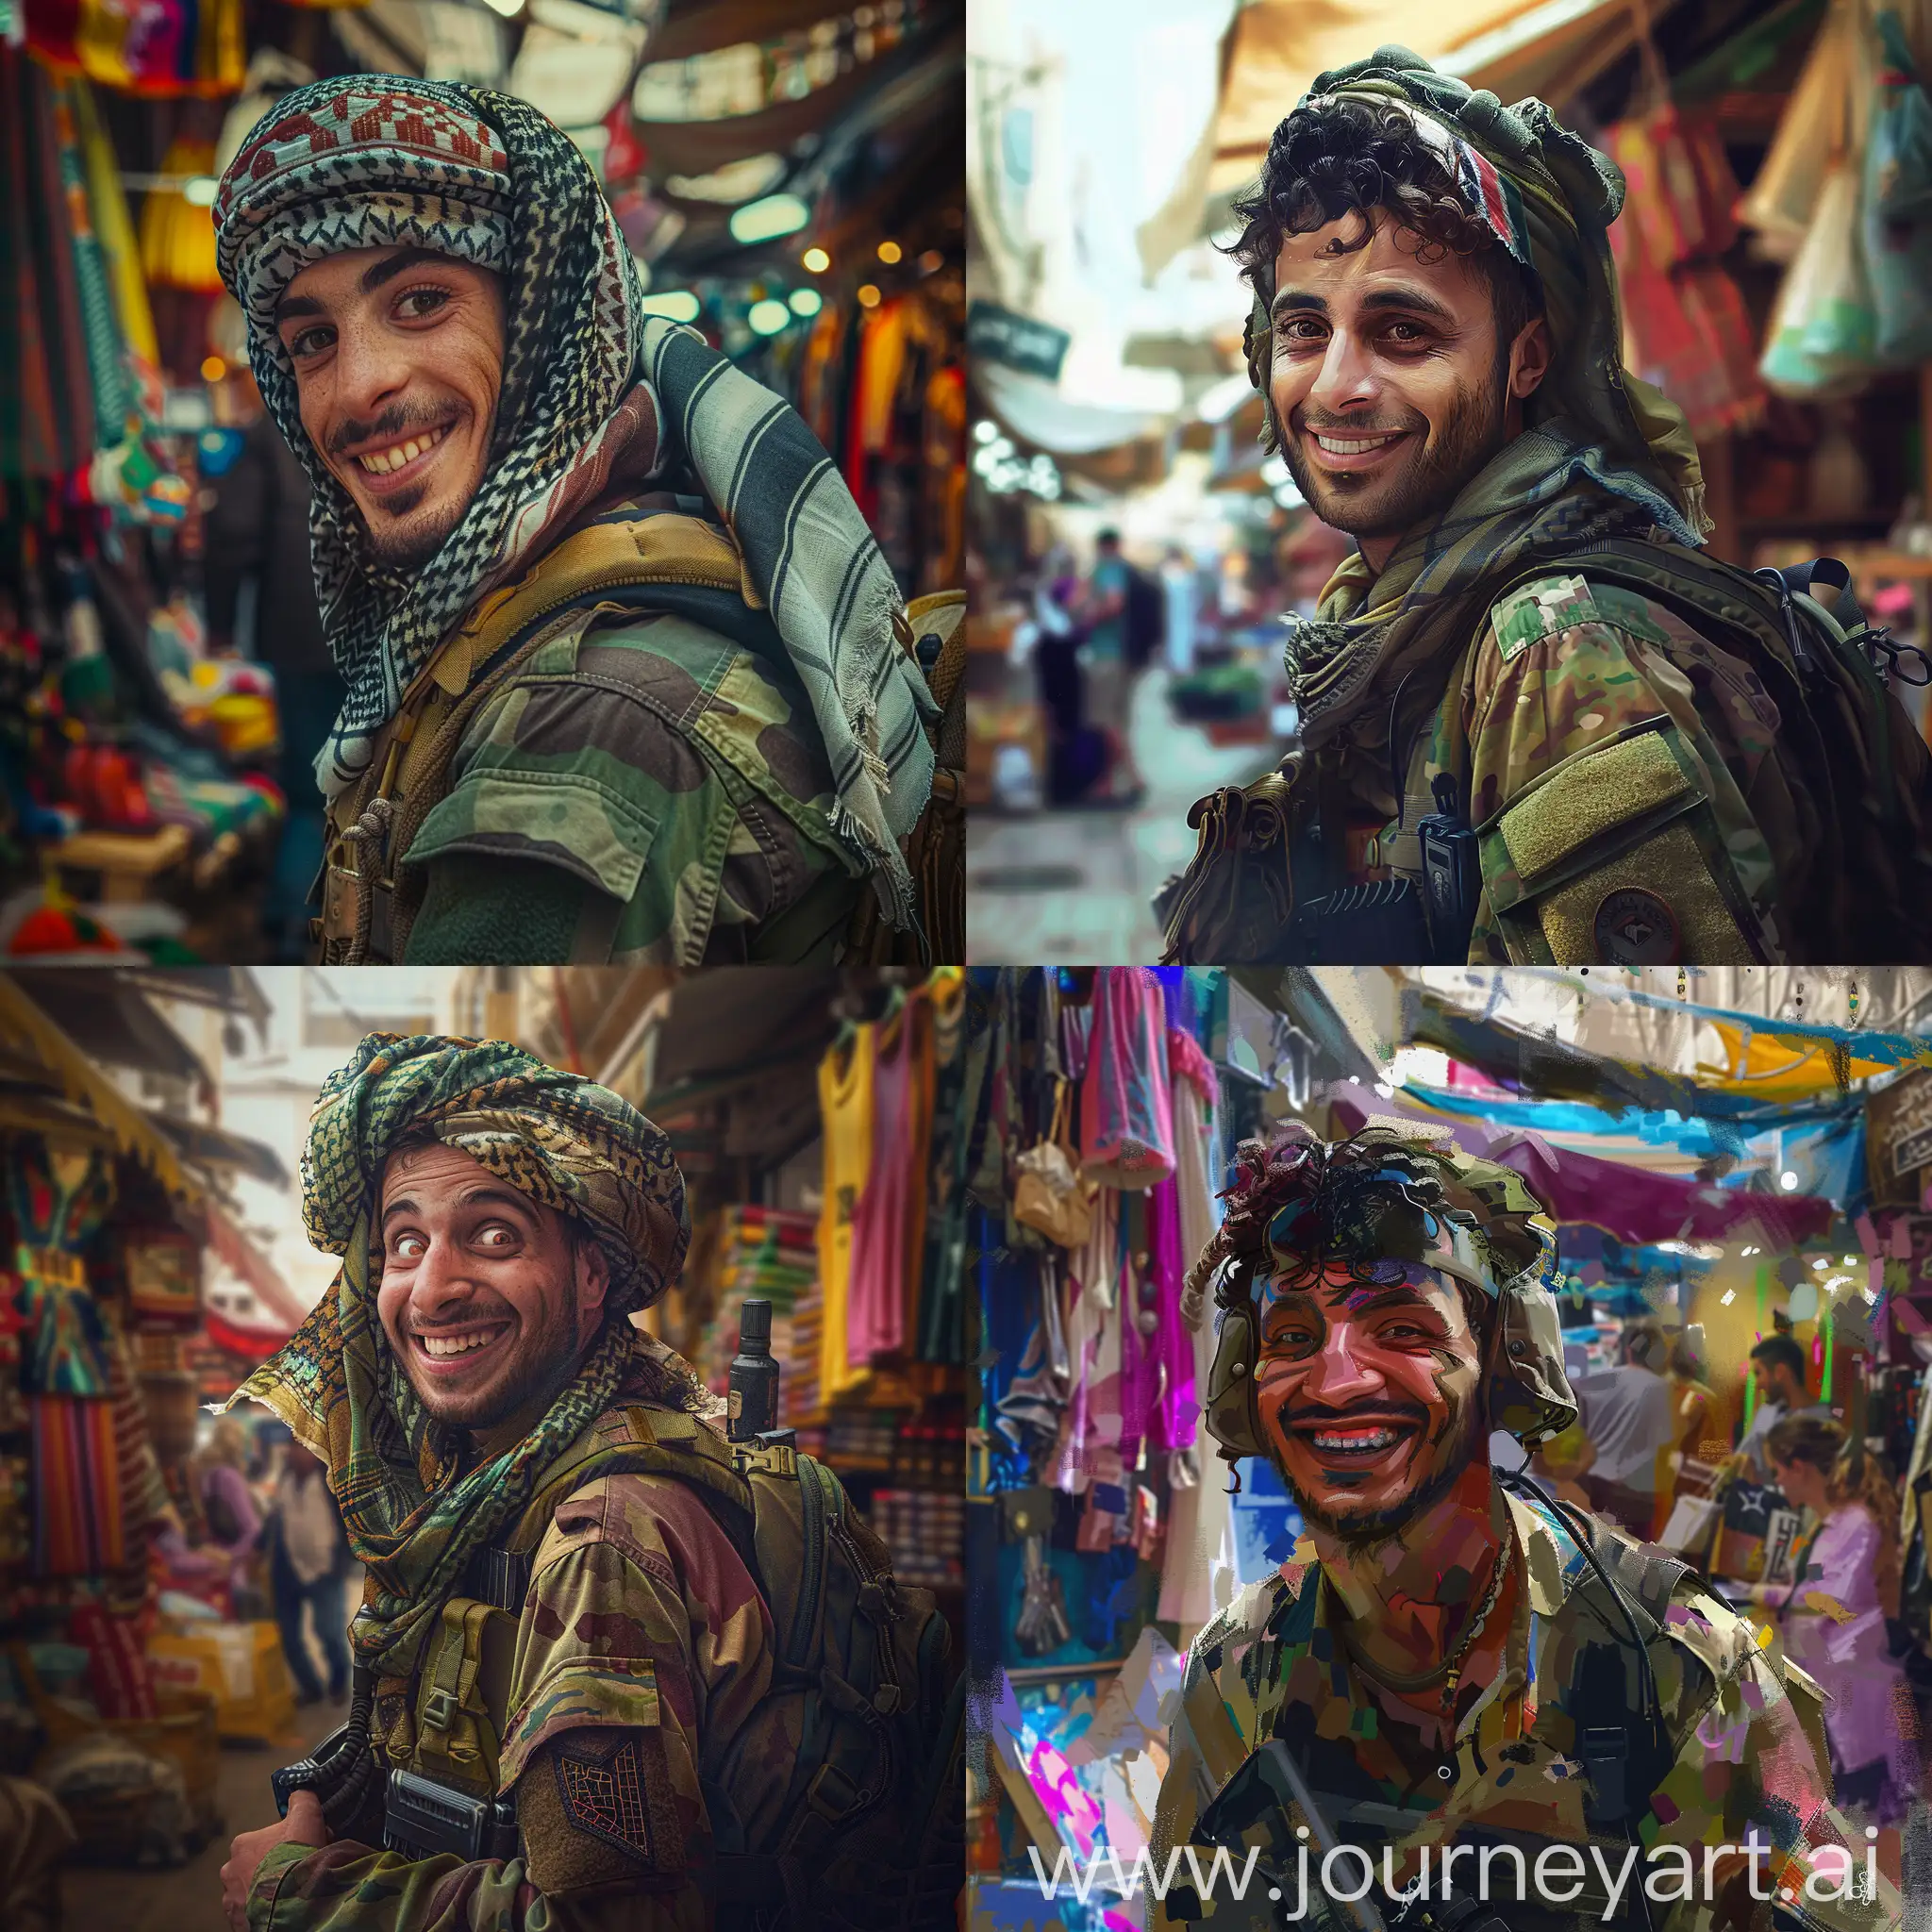 Playful-Palestinian-Soldier-in-BohoChic-Attire-at-Urban-Market